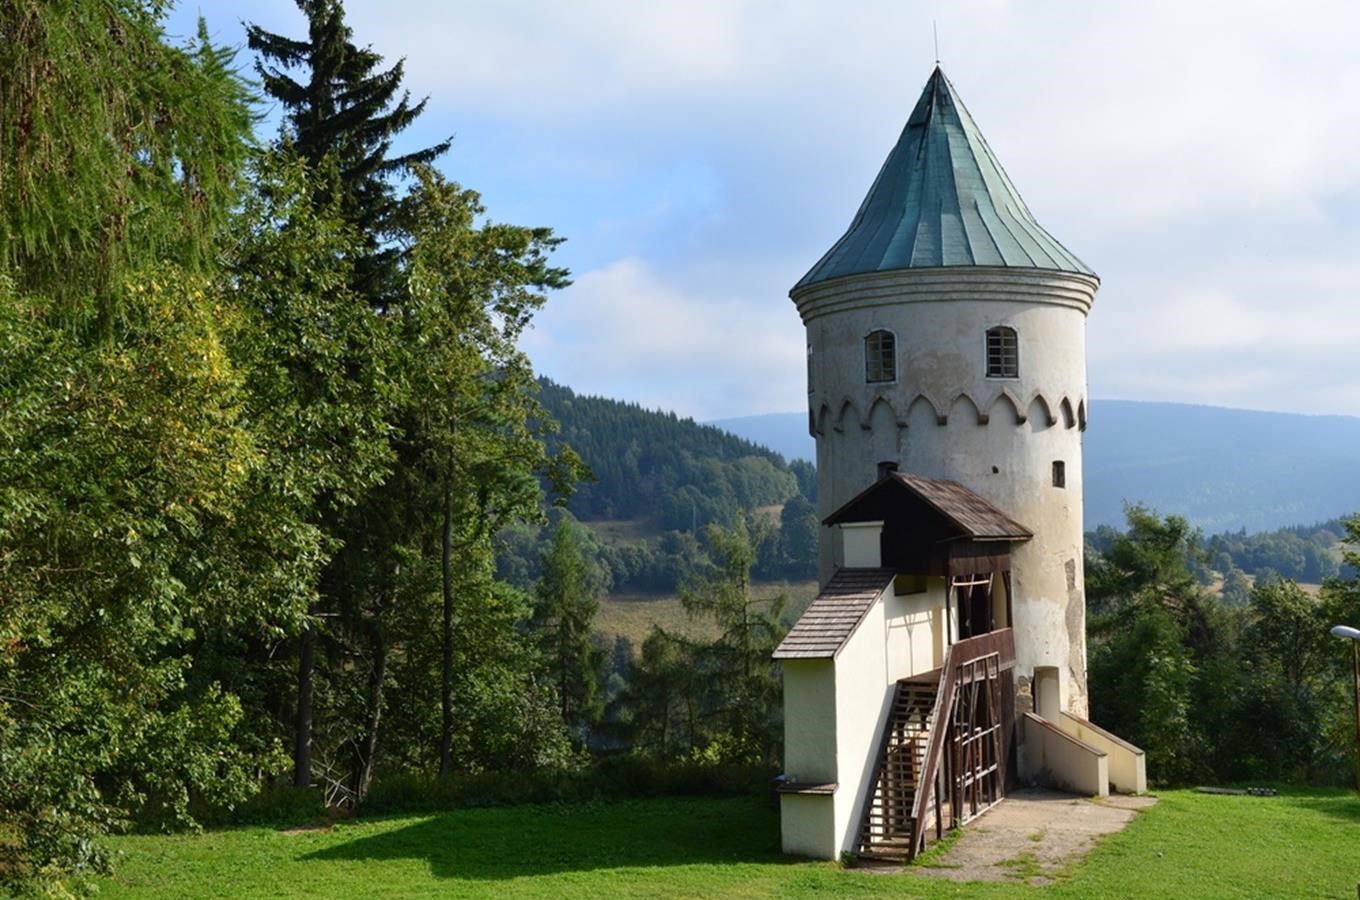 Šlikova věž - zřícenina hradu Freudenstein u Jáchymova